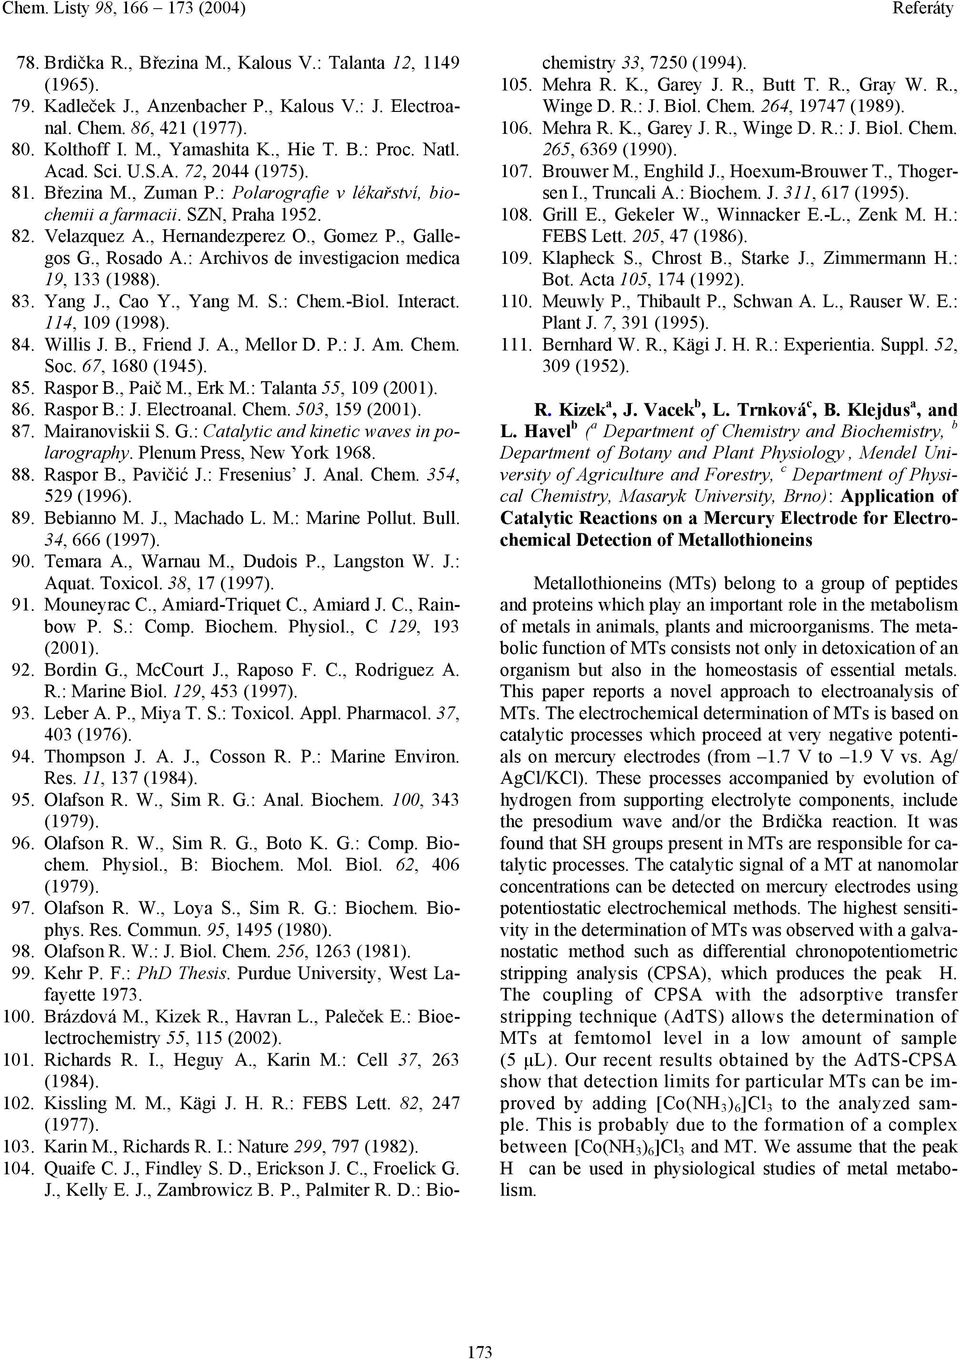 , Hernandezperez O., Gomez P., Gallegos G., Rosado A.: Archivos de investigacion medica 19, 133 (1988). 83. Yang J., Cao Y., Yang M. S.: Chem.-Biol. Interact. 114, 109 (1998). 84. Willis J. B.